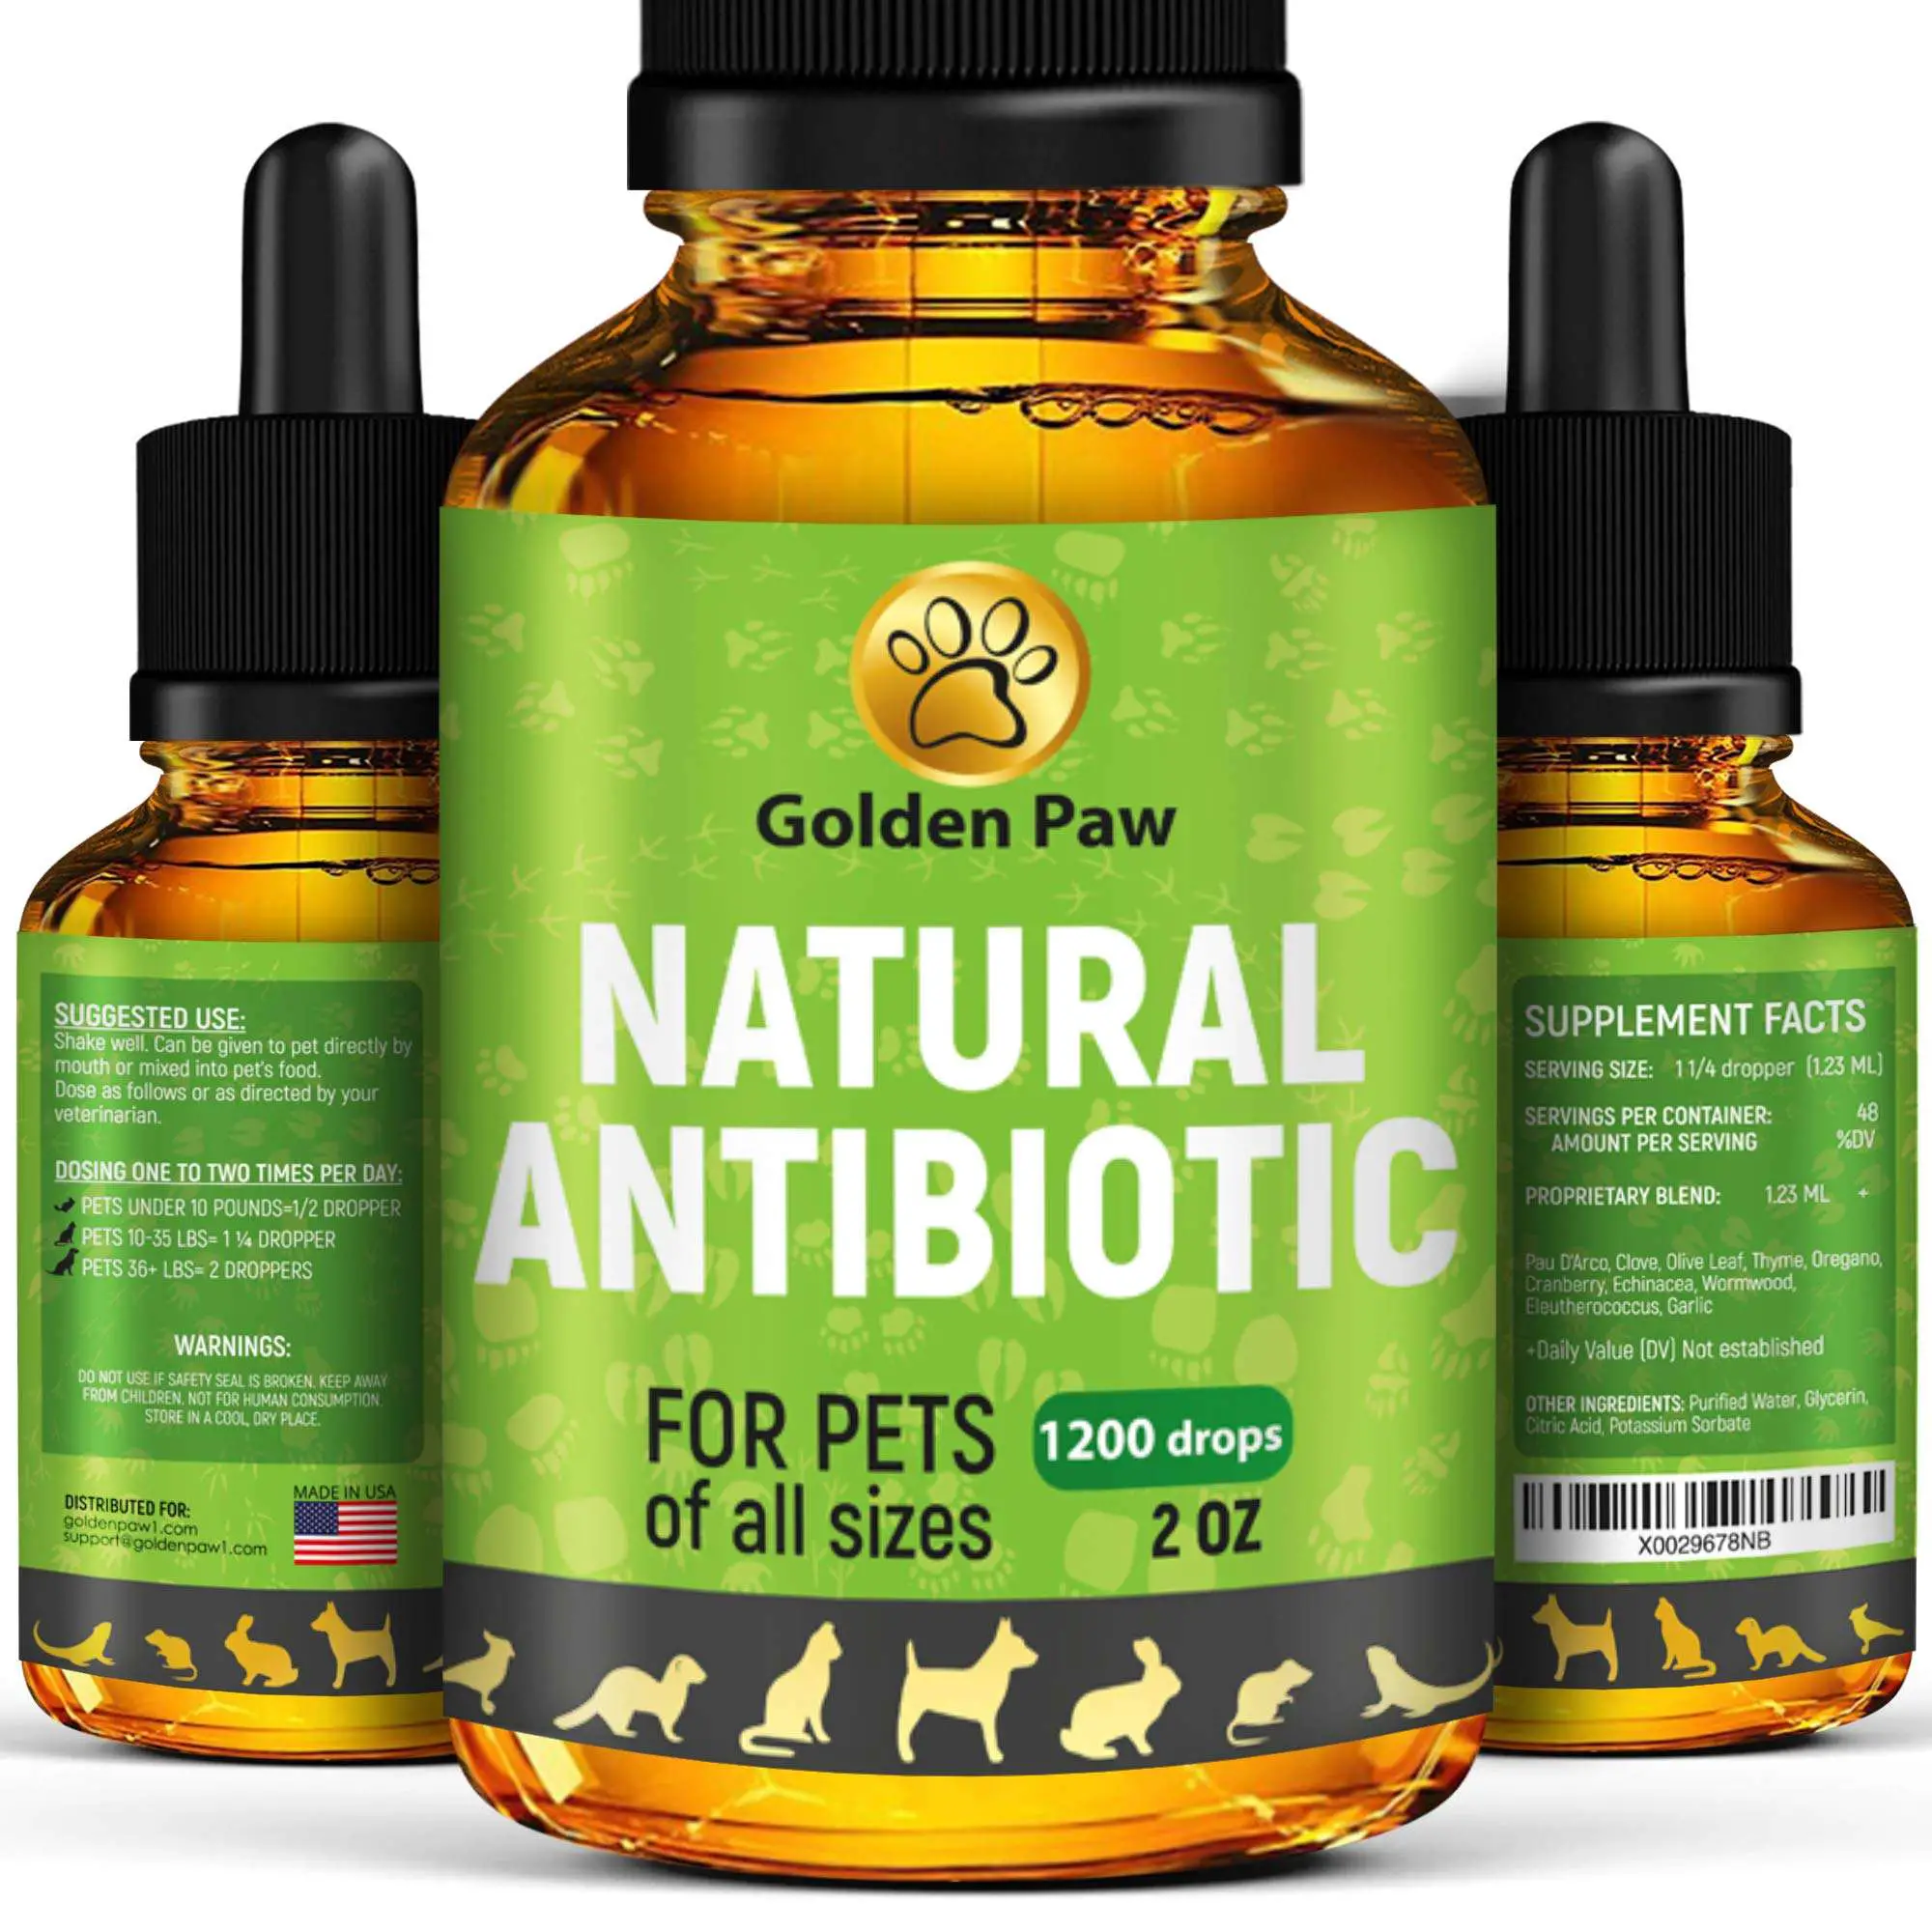 Natural Antibiotic for Pets